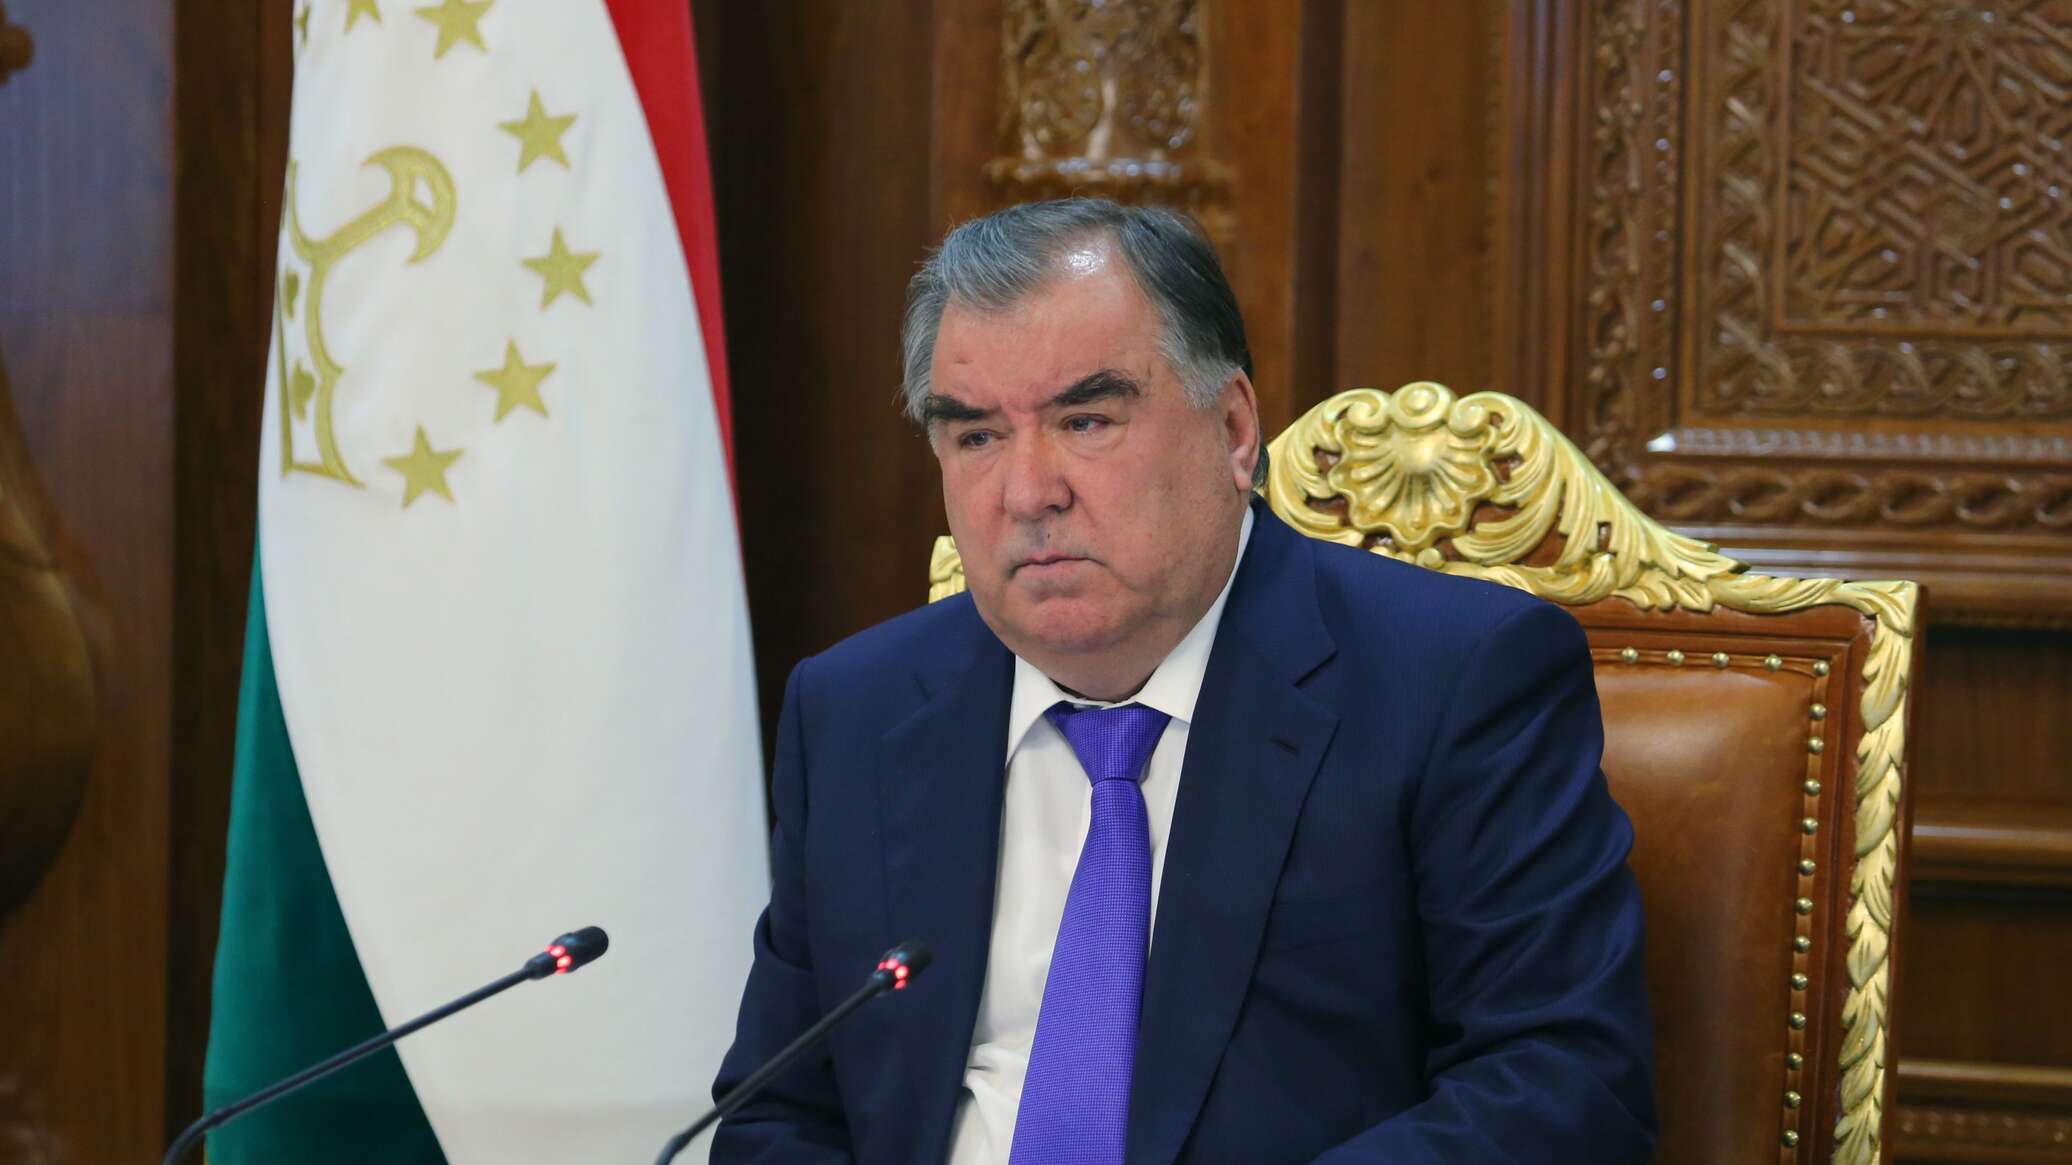 Заявление президента таджикистана. Эмомали Рахмон. Таджикистан Эмомали Рахмон. Эмомали Рахмон 1997.